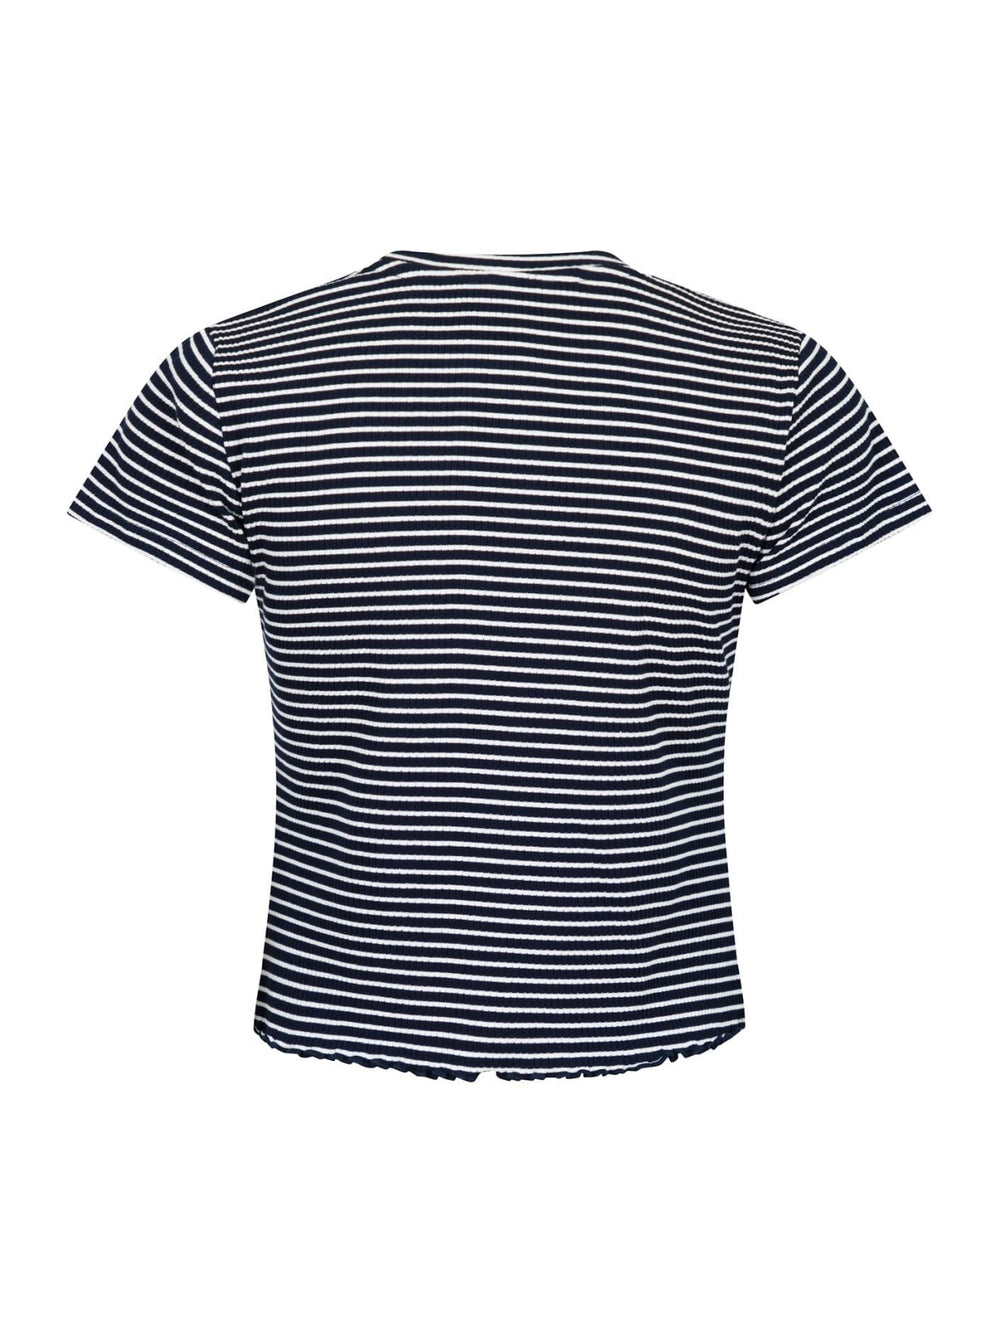 Forudbestilling - Neo Noir - Lonnie Stripe Tee - Dark Navy T-shirts 